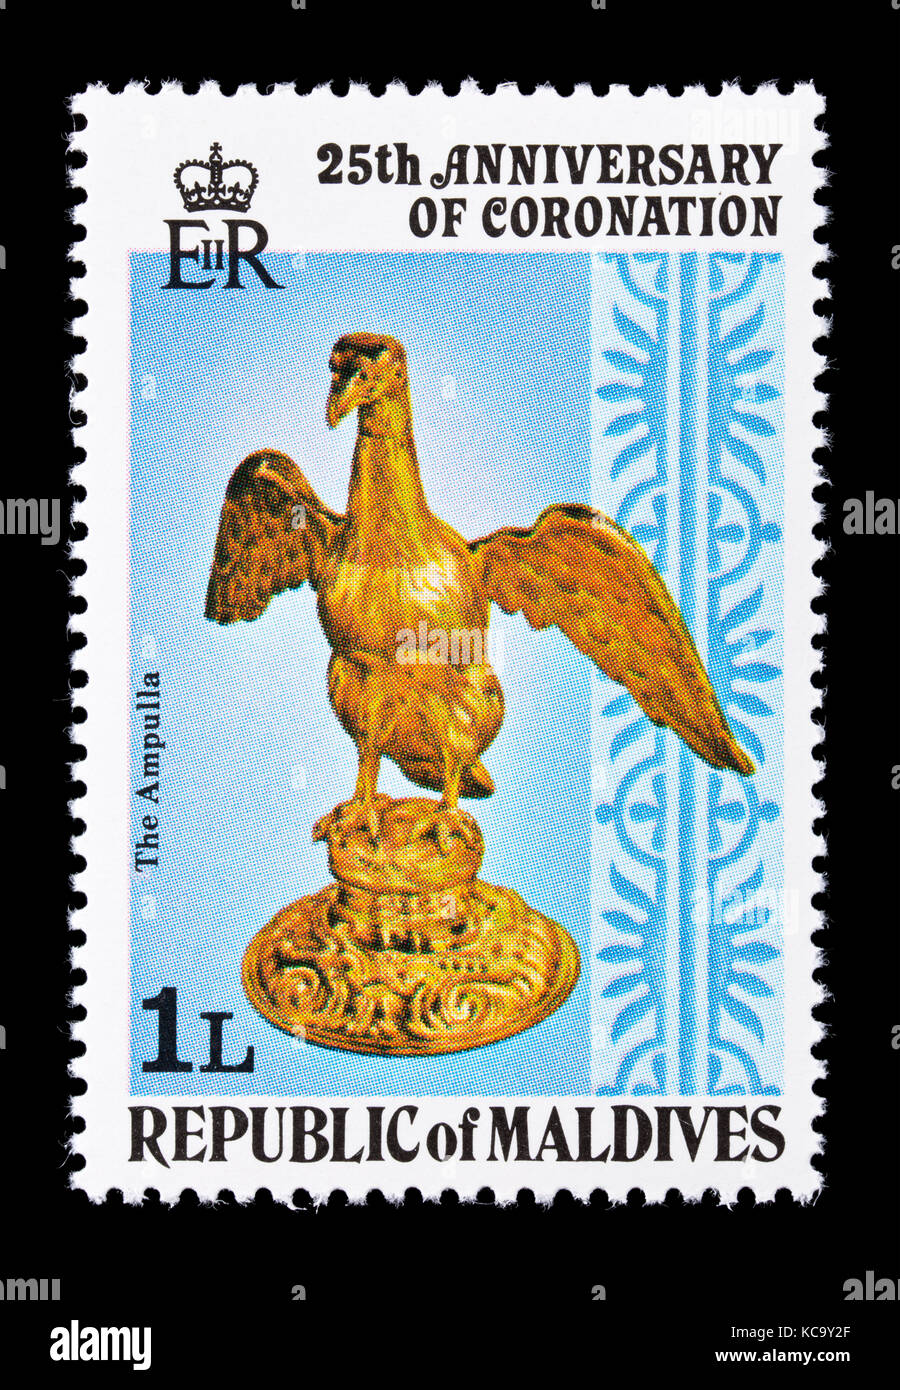 Timbre-poste des Maldives décrivant le sceptre royal avec dove, 25e anniversaire du couronnement de la reine Elizabeth II. Banque D'Images